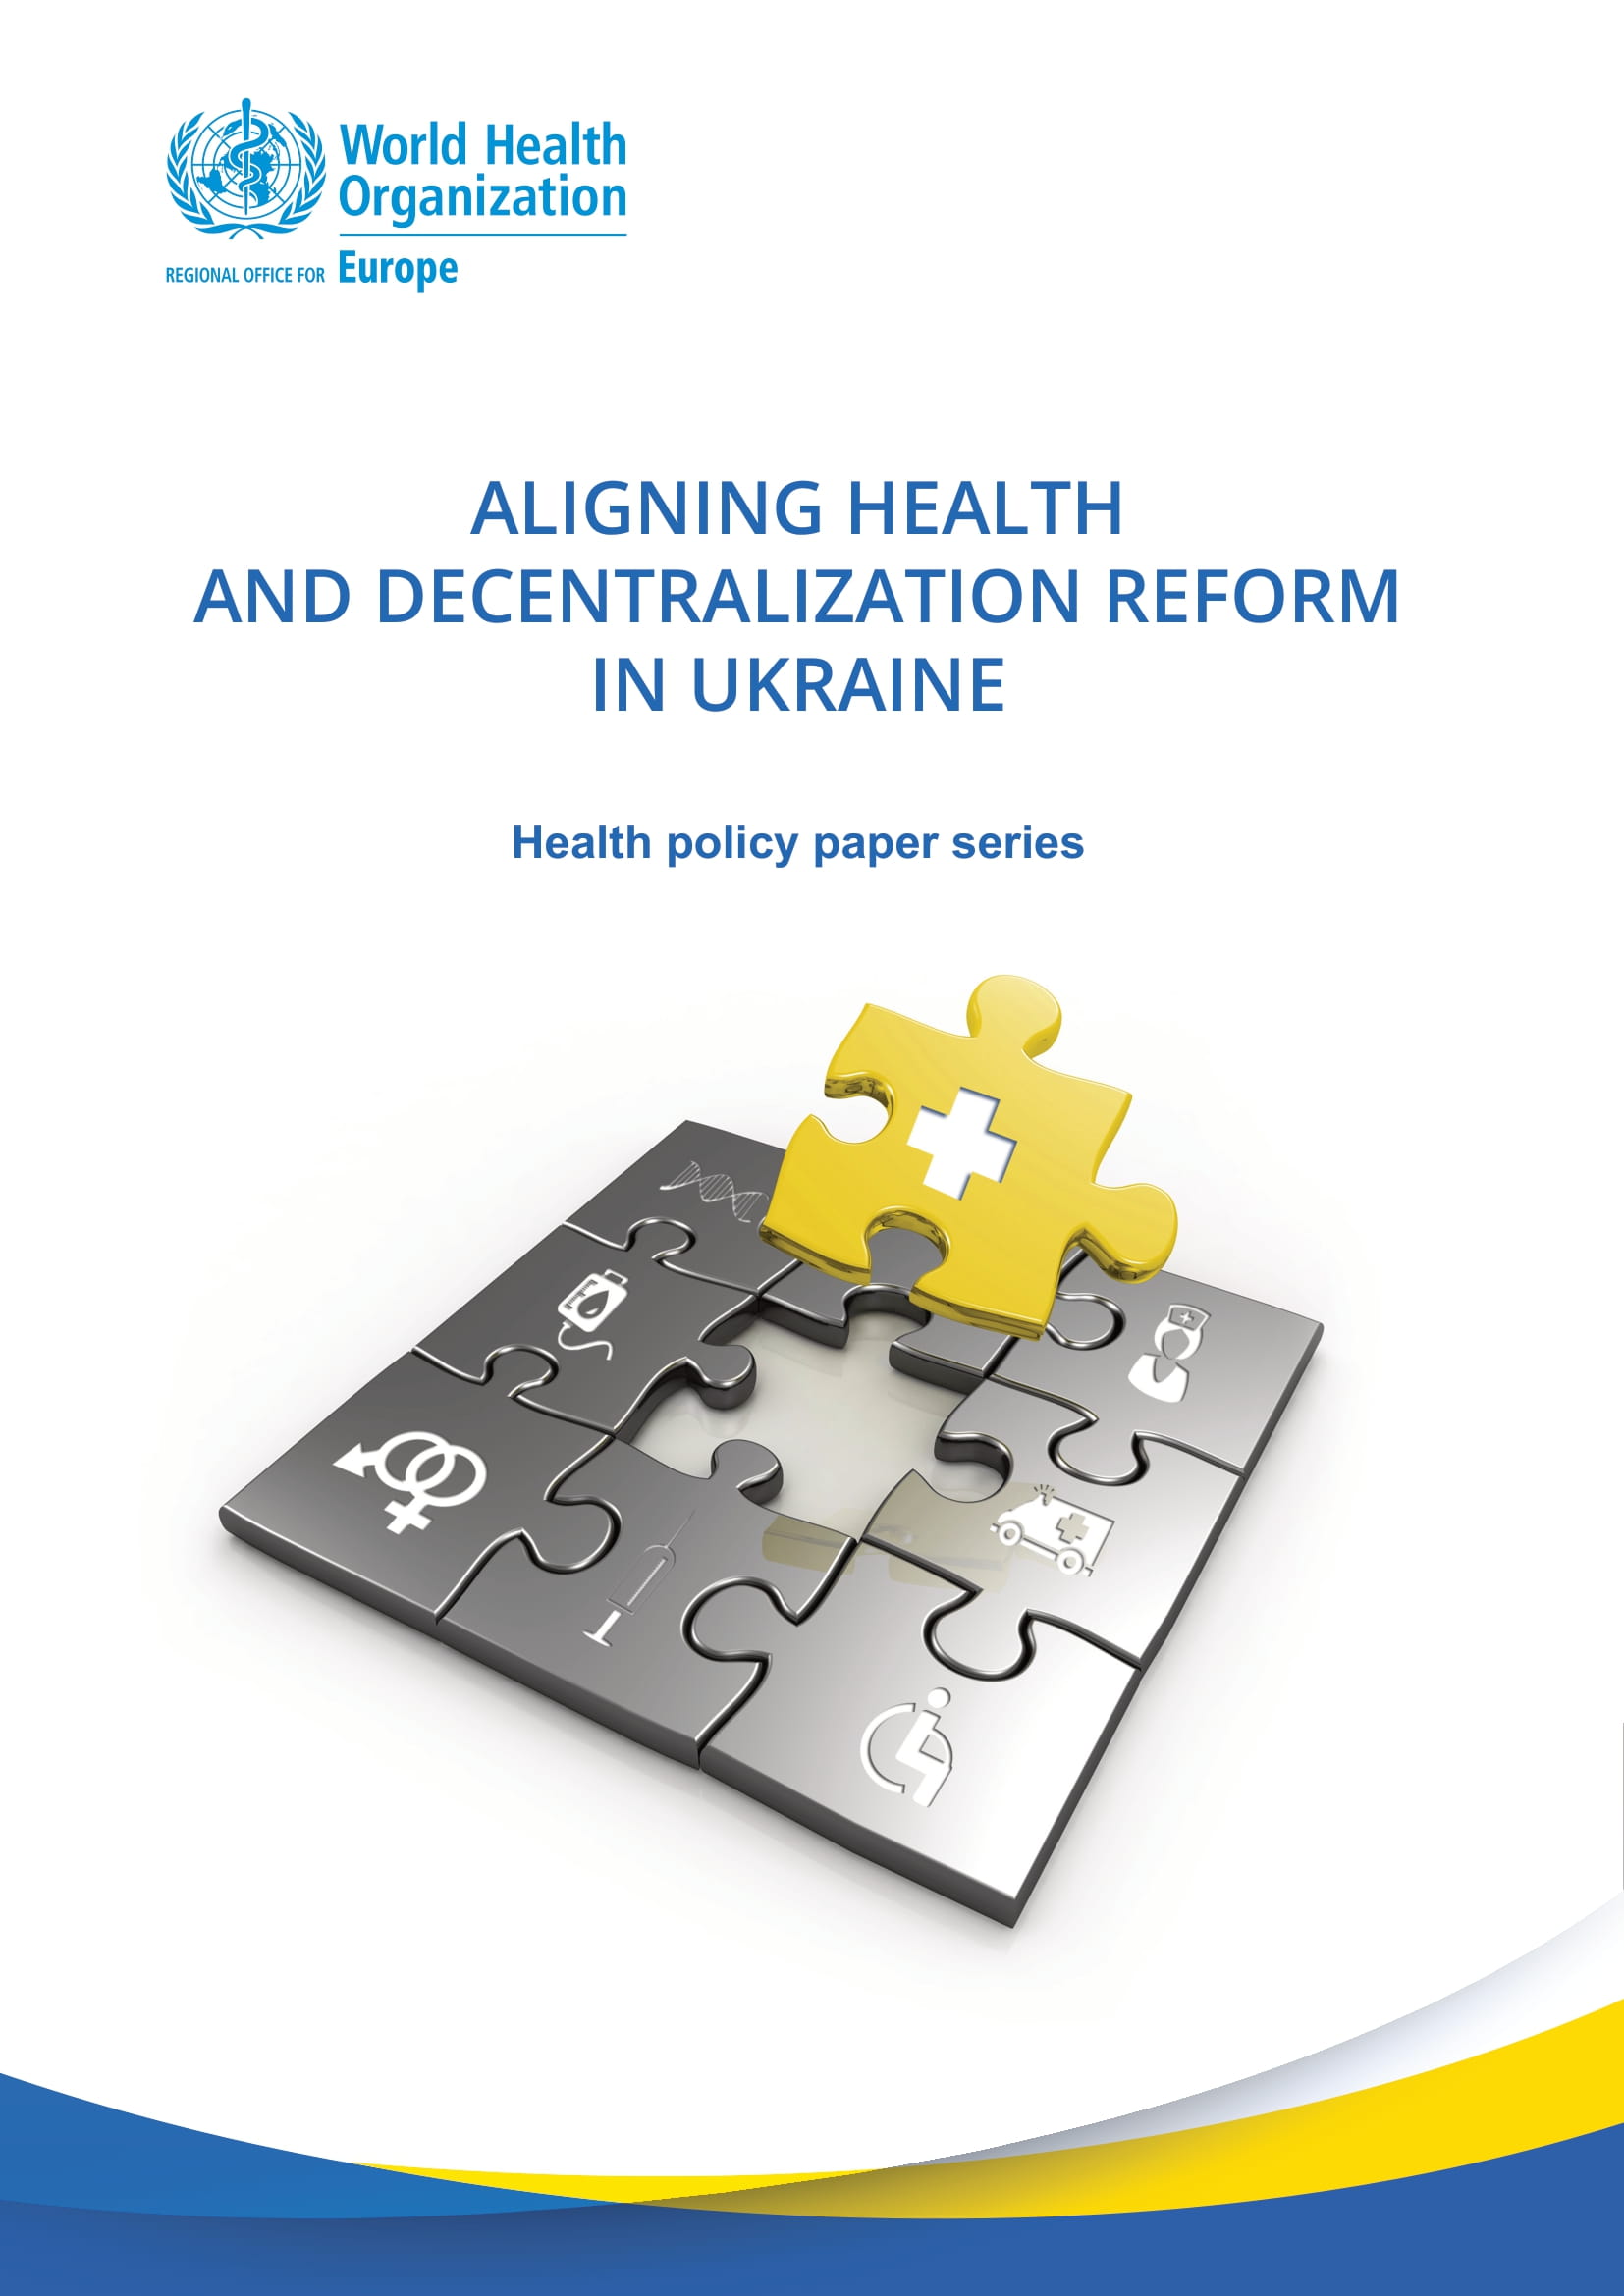 Publication d’un nouveau rapport sur l’alignement de la réforme de la santé et de la décentralisation en Ukraine